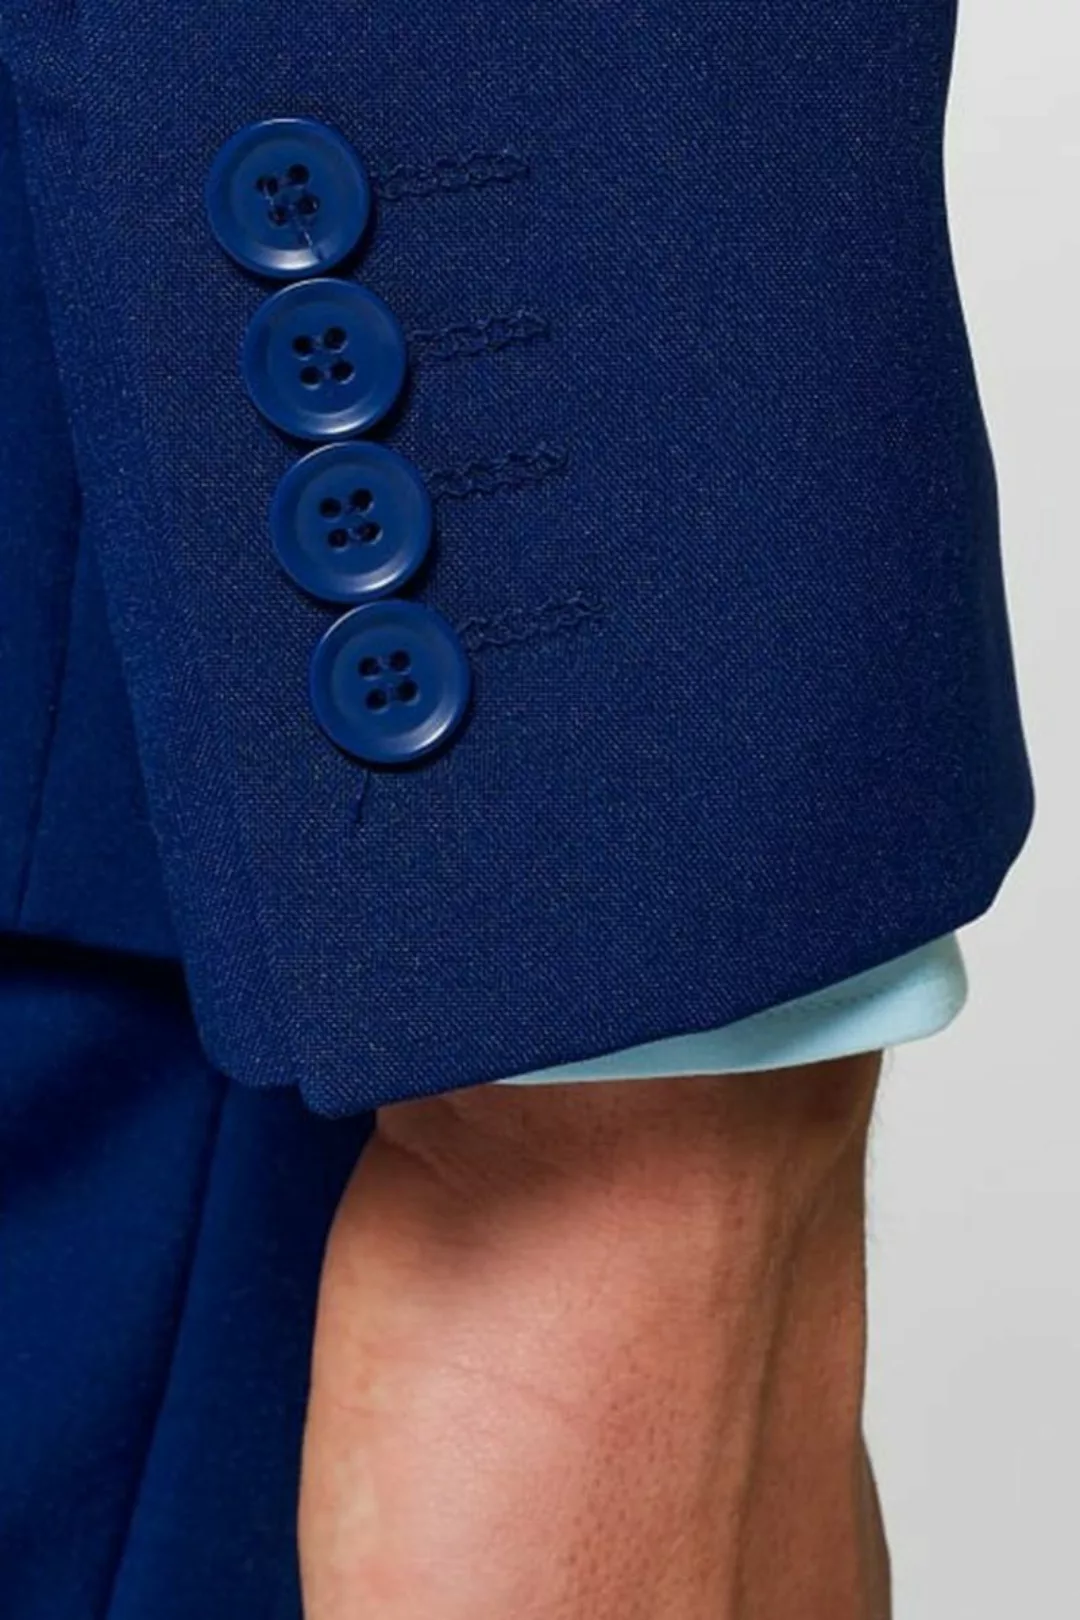 Opposuits Anzug Navy Royale Ausgefallene Anzüge für coole Männer günstig online kaufen